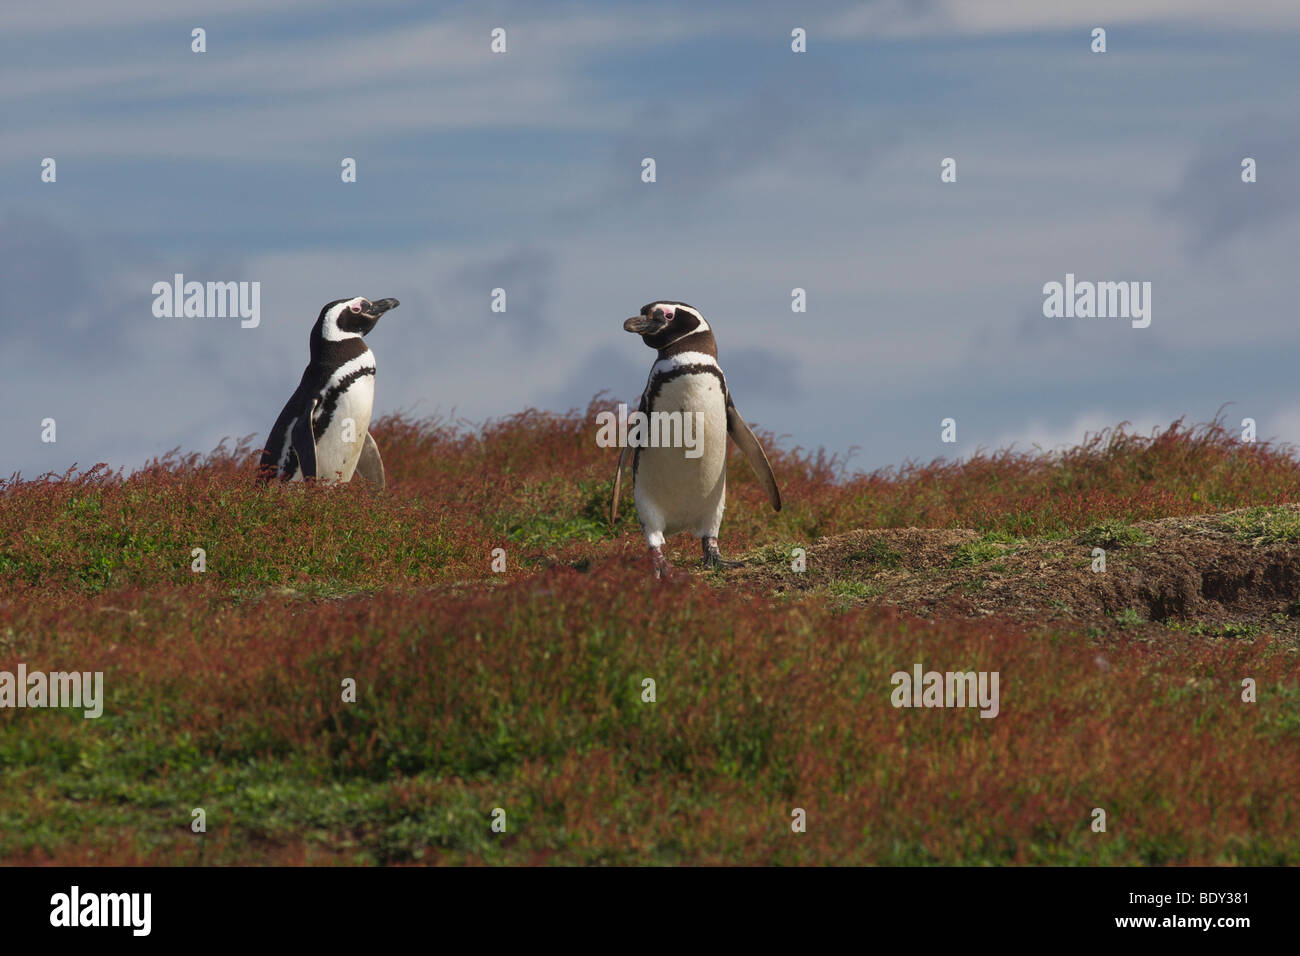 Magellanic penguins (Spheniscus magellanicus), Falkland Islands, South America Stock Photo